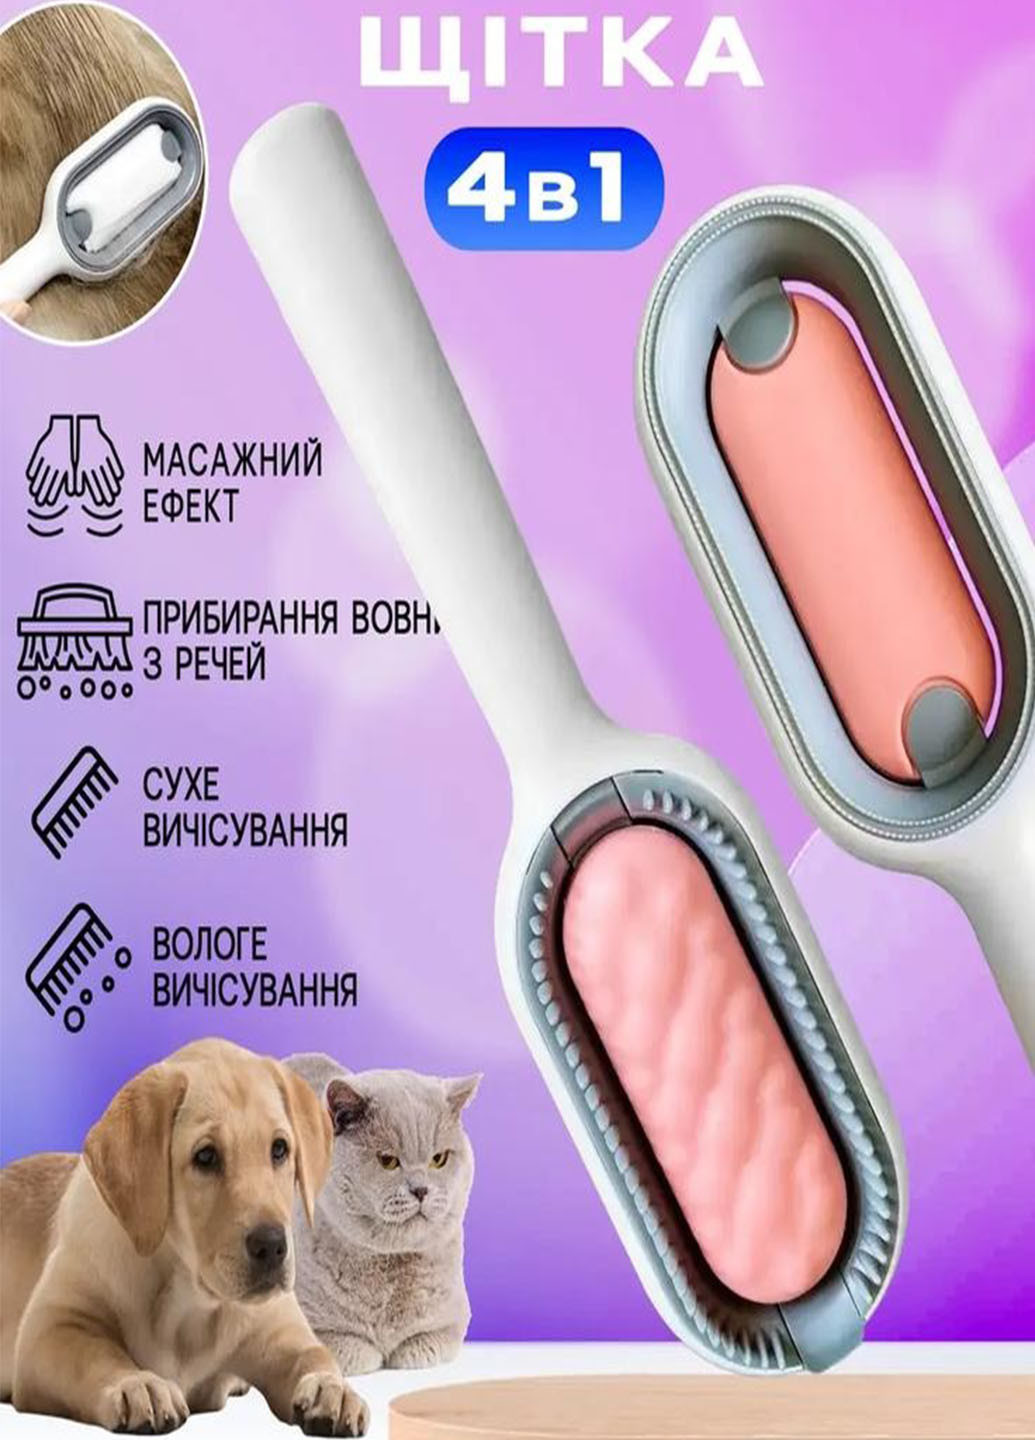 Многофункциональная щетка для животных Pet Gravity 4в1 Pet Grooming Comb для сухого и влаговычесивания собак и кошек Good Idea (272149206)